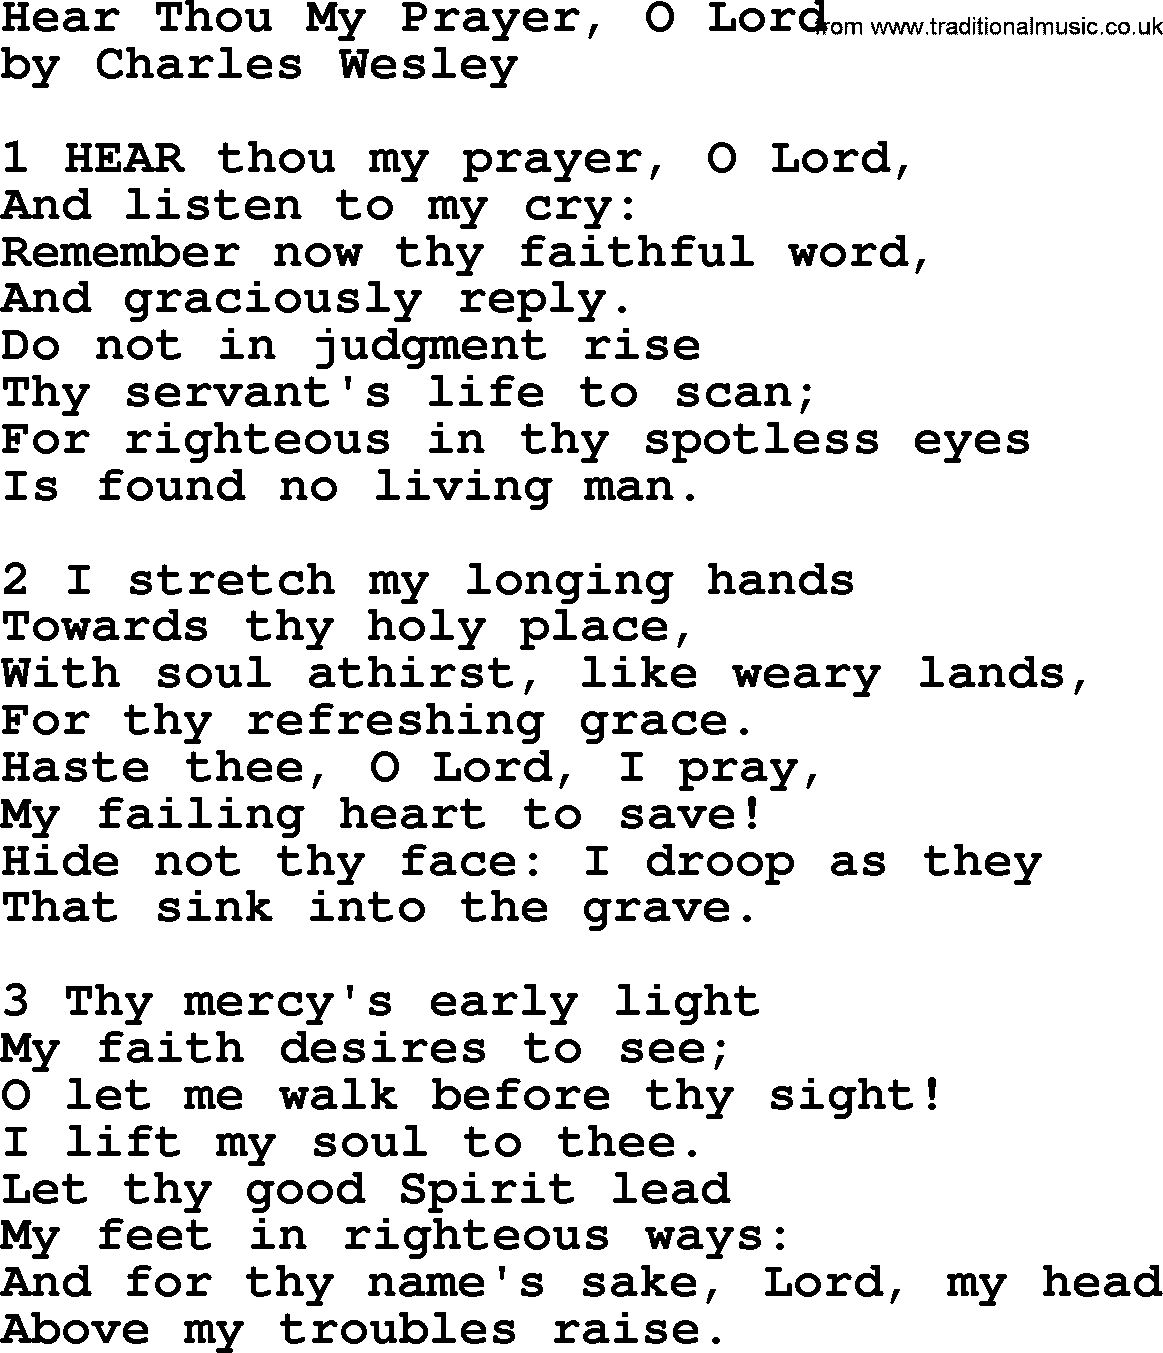 Charles Wesley hymn: Hear Thou My Prayer, O Lord, lyrics